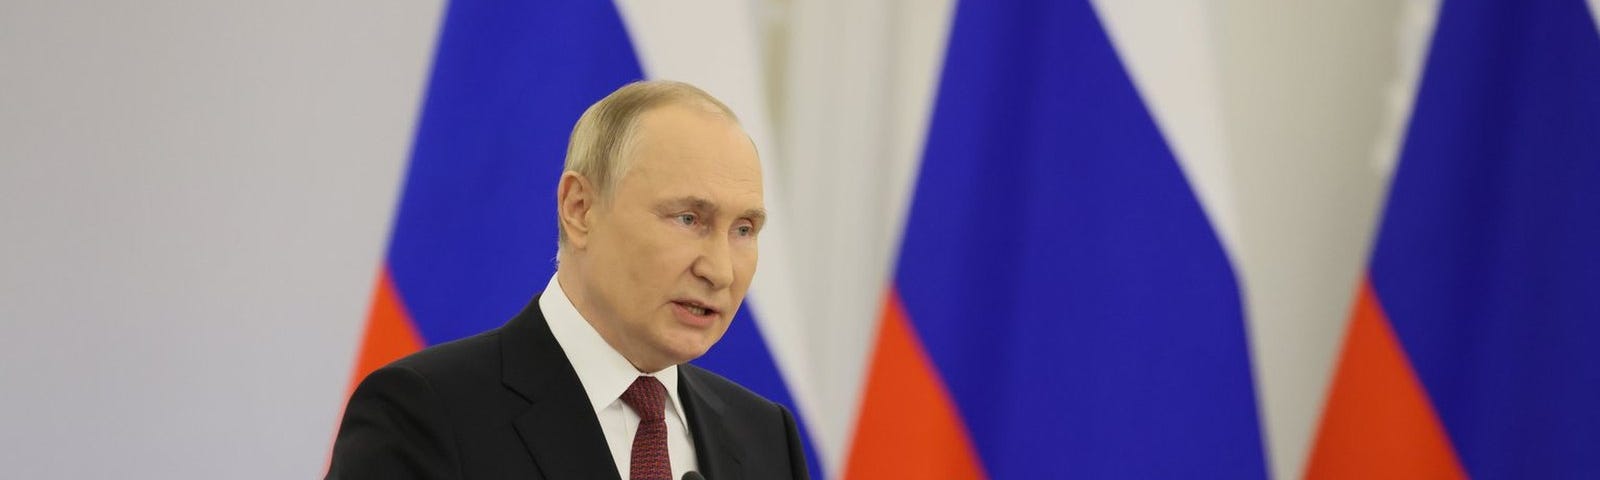 Vladimir Putin speaking in Russia